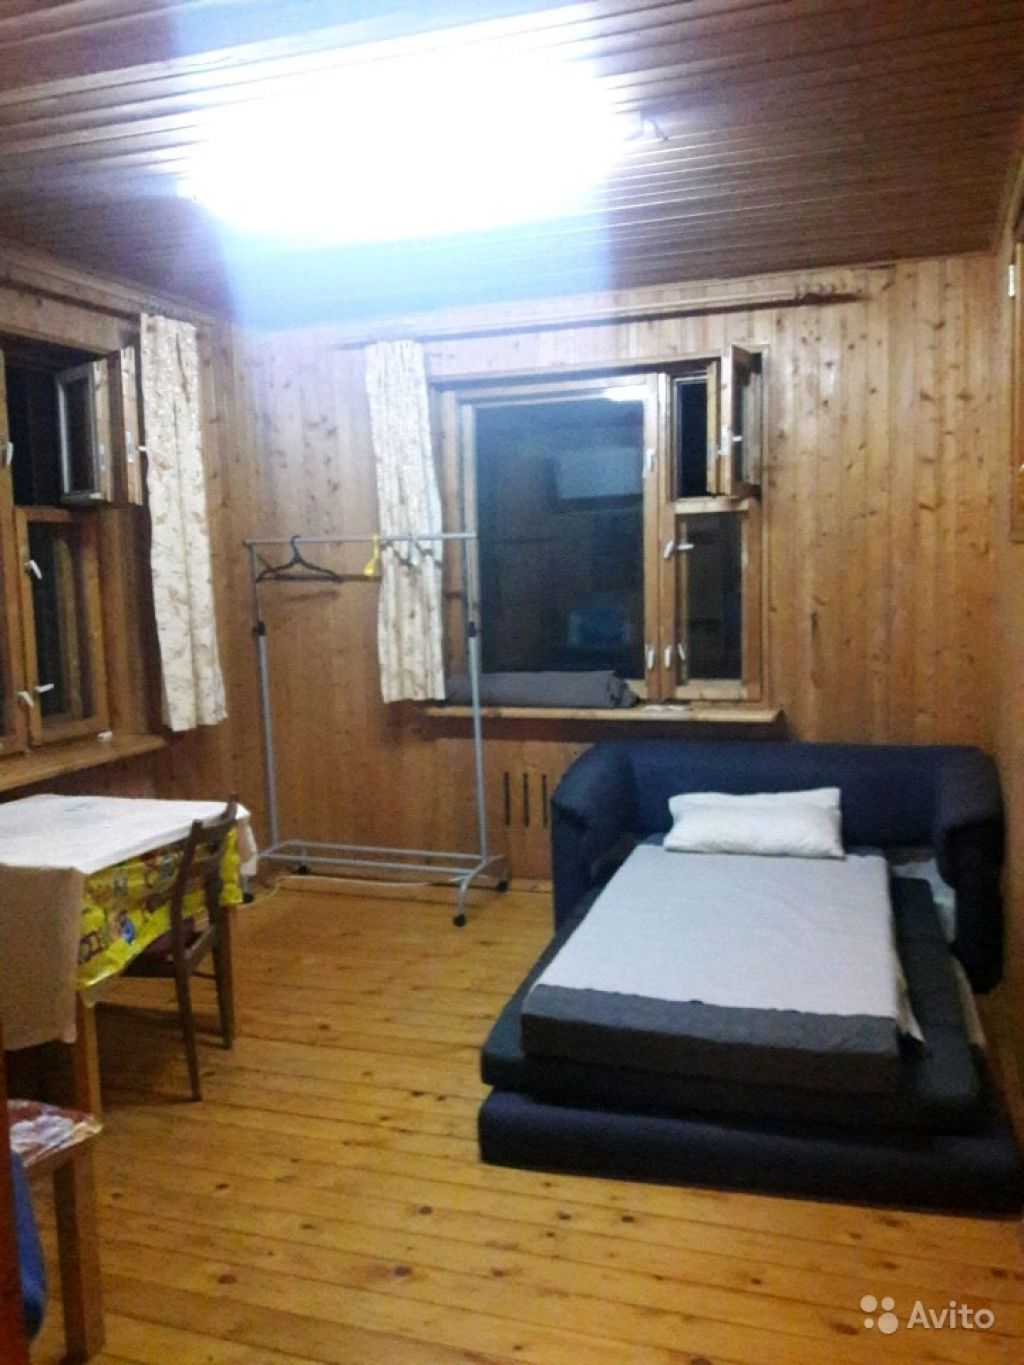 Сдам комнату Комната 24 м² в 1-к квартире на 3 этаже 3-этажного монолитного дома в Москве. Фото 1